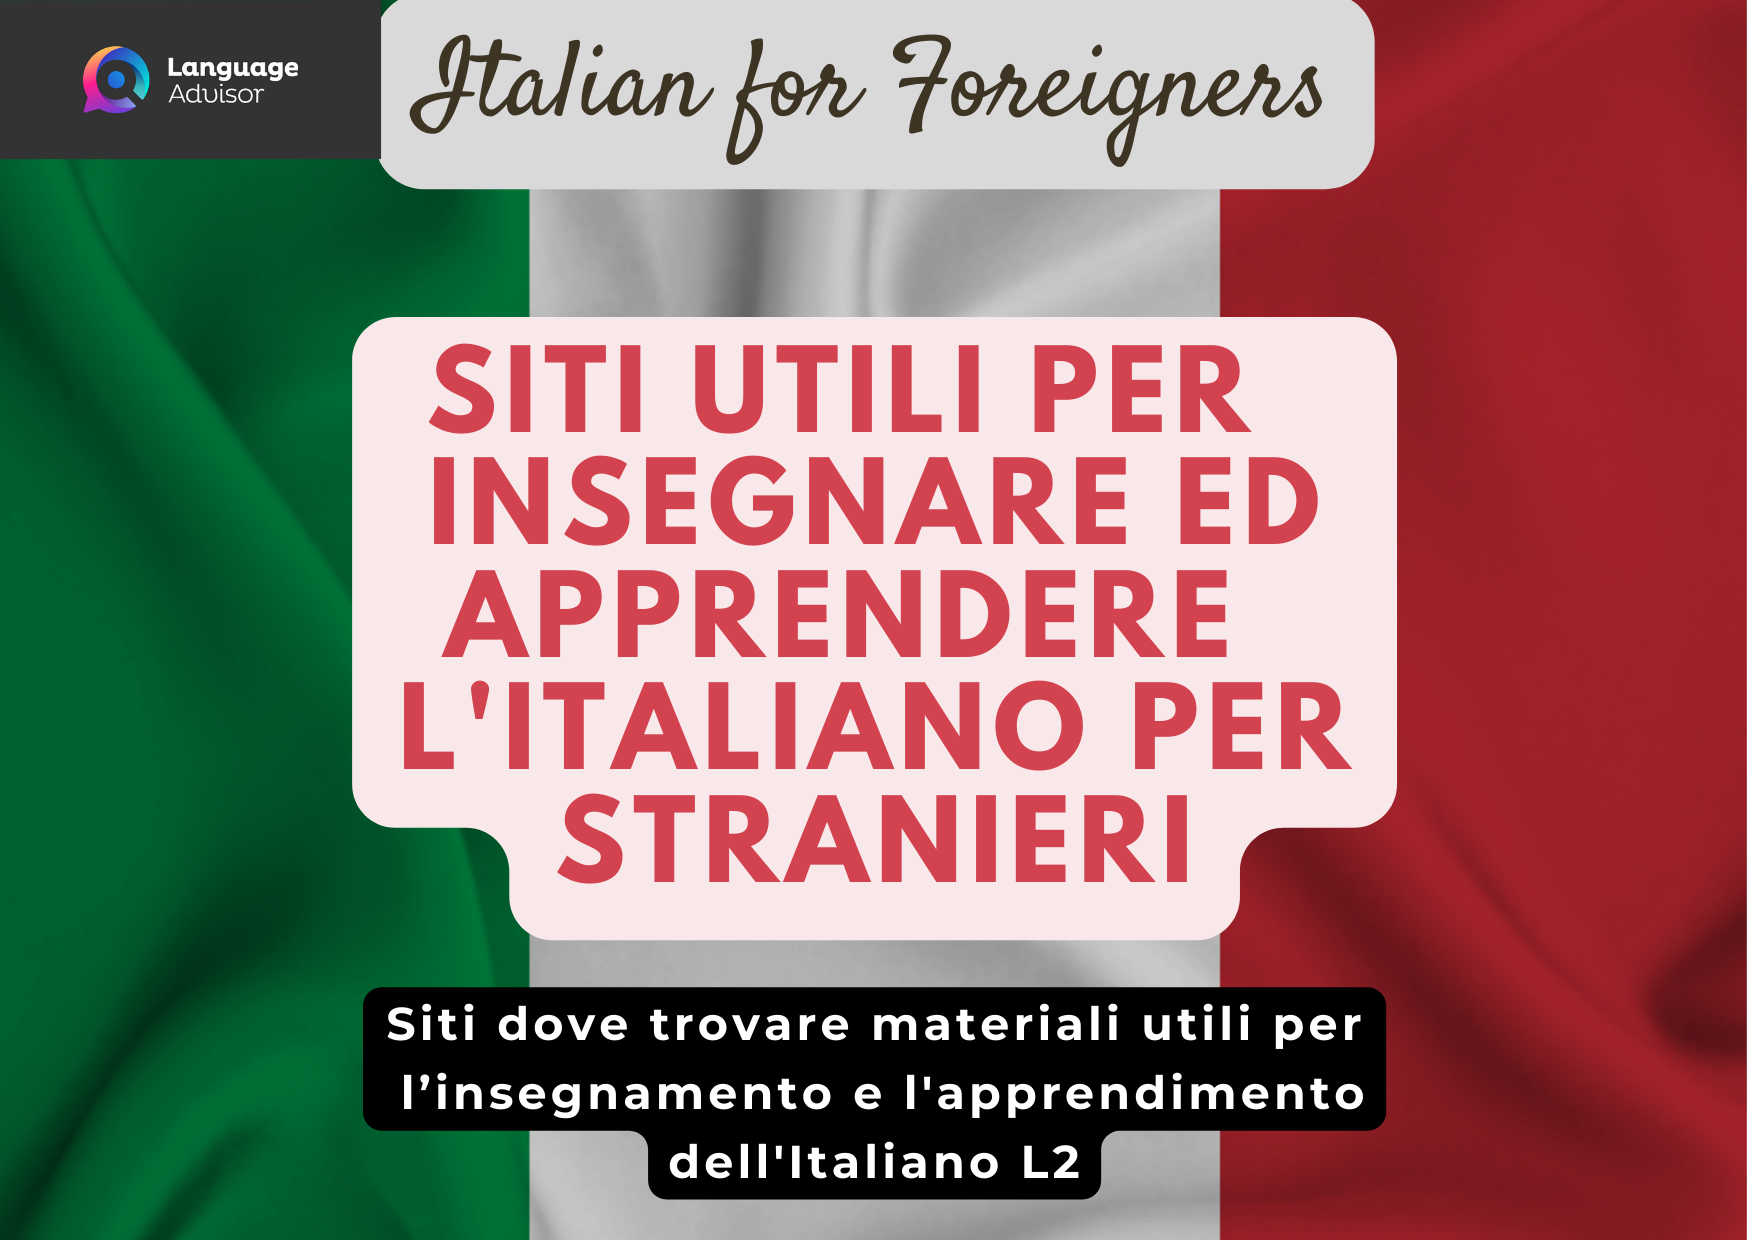 Siti utili per insegnare ed apprendere l'italiano per stranieri